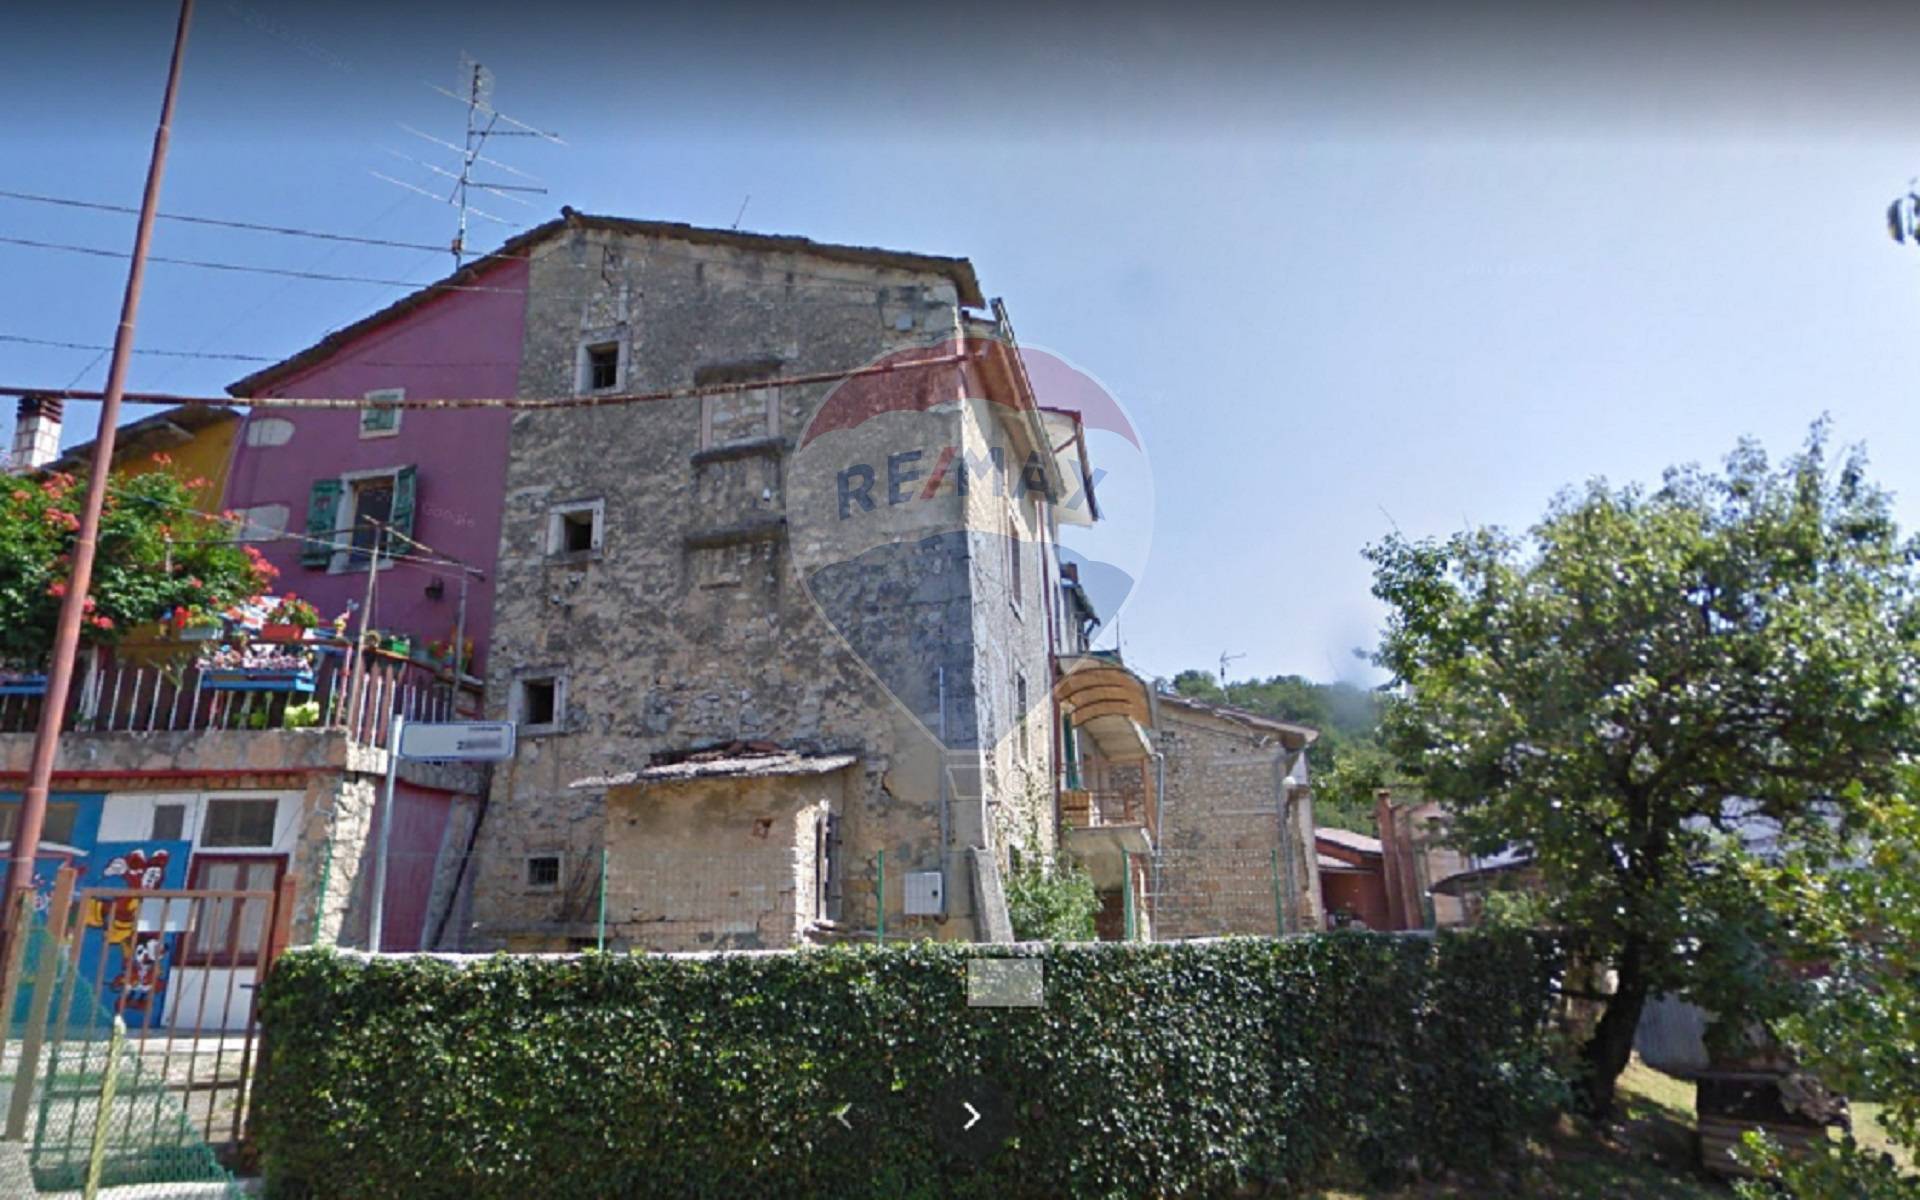 Rustico / Casale in vendita a Bosco Chiesanuova, 6 locali, zona Località: Lughezzano-Arzer?, prezzo € 39.000 | CambioCasa.it